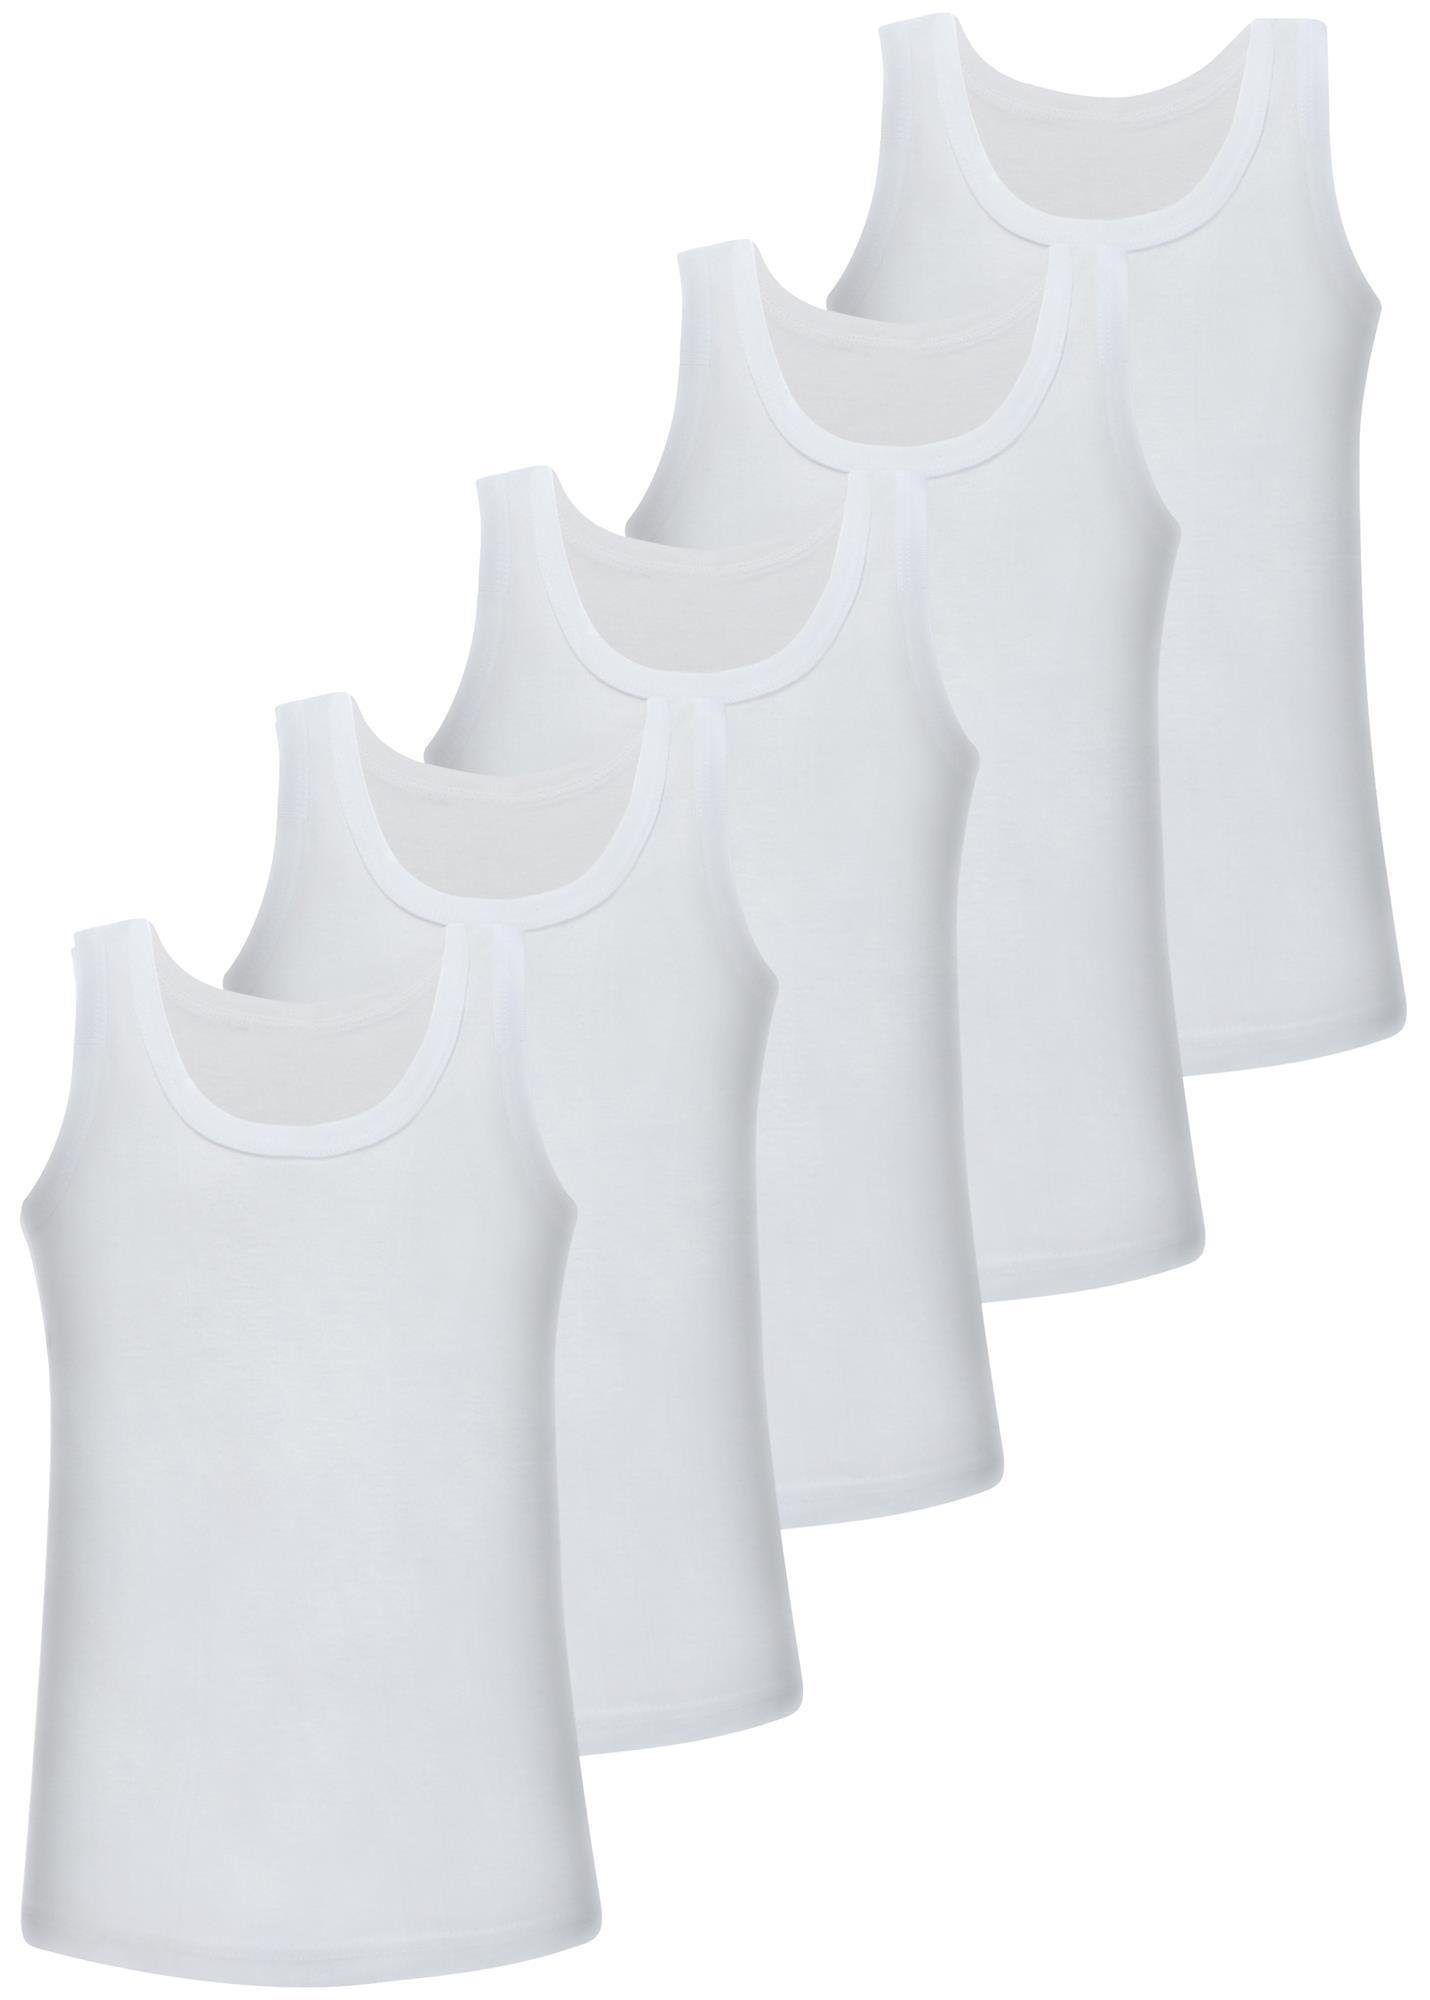 LOREZA Unterhemd 5 Jungen 100% Baumwolle Unterhemden ohne Seitennaht (Spar-Packung, 5-St) Weiss